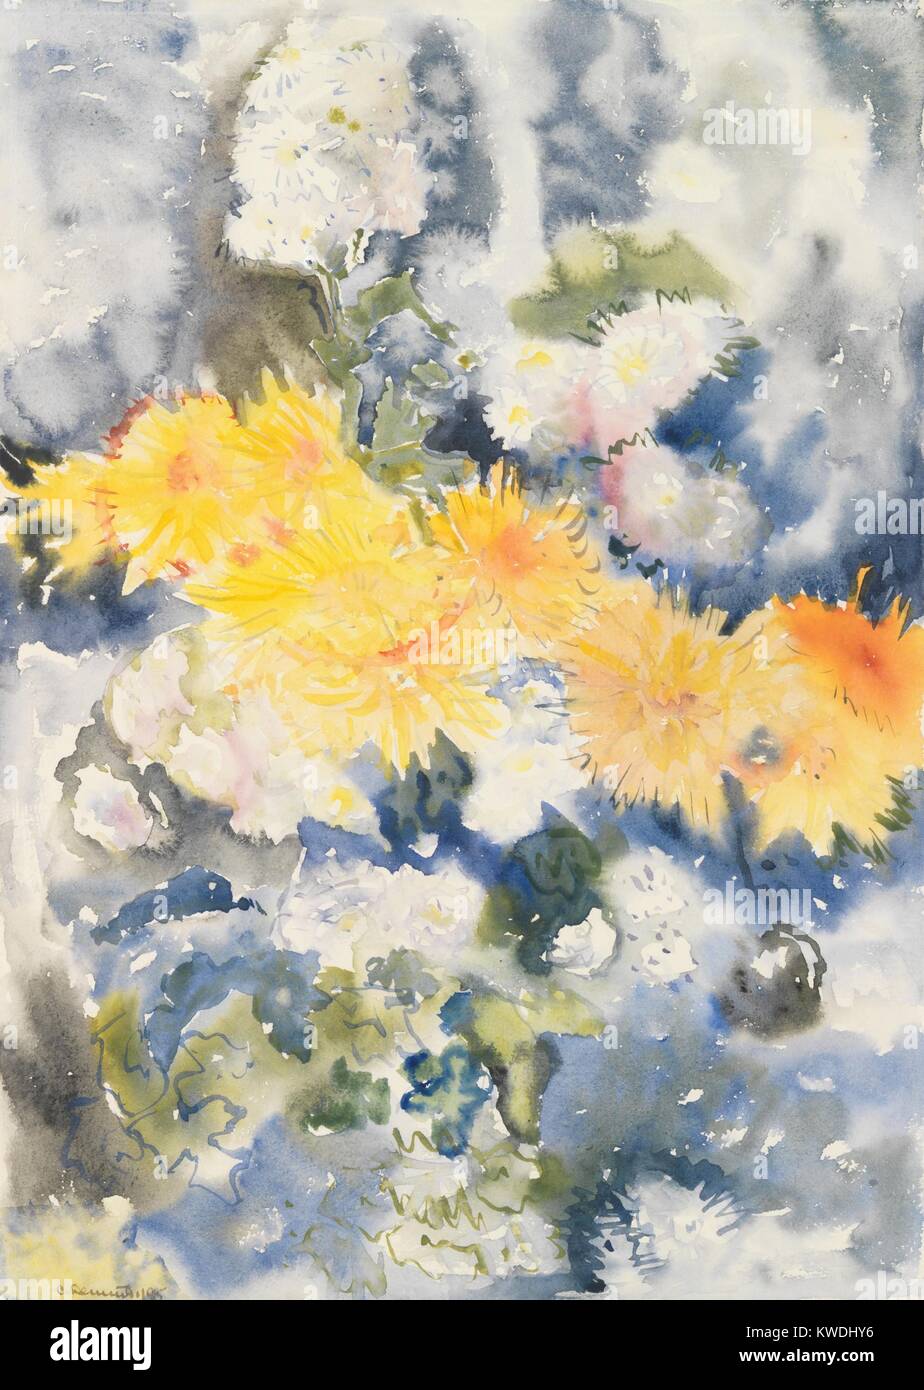 Gelb und Blau, von Charles Demuth, 1915, Amerikanische Malerei, Aquarell auf Papier. Der Titel spielt auf die Künstler formale Absichten, der Verfassen einer Arbeit mit leuchtend gelben Blüten gegen weiche Formen mit kühlen Farben Blau und Grün (BSLOC 2017 7 90) Stockfoto